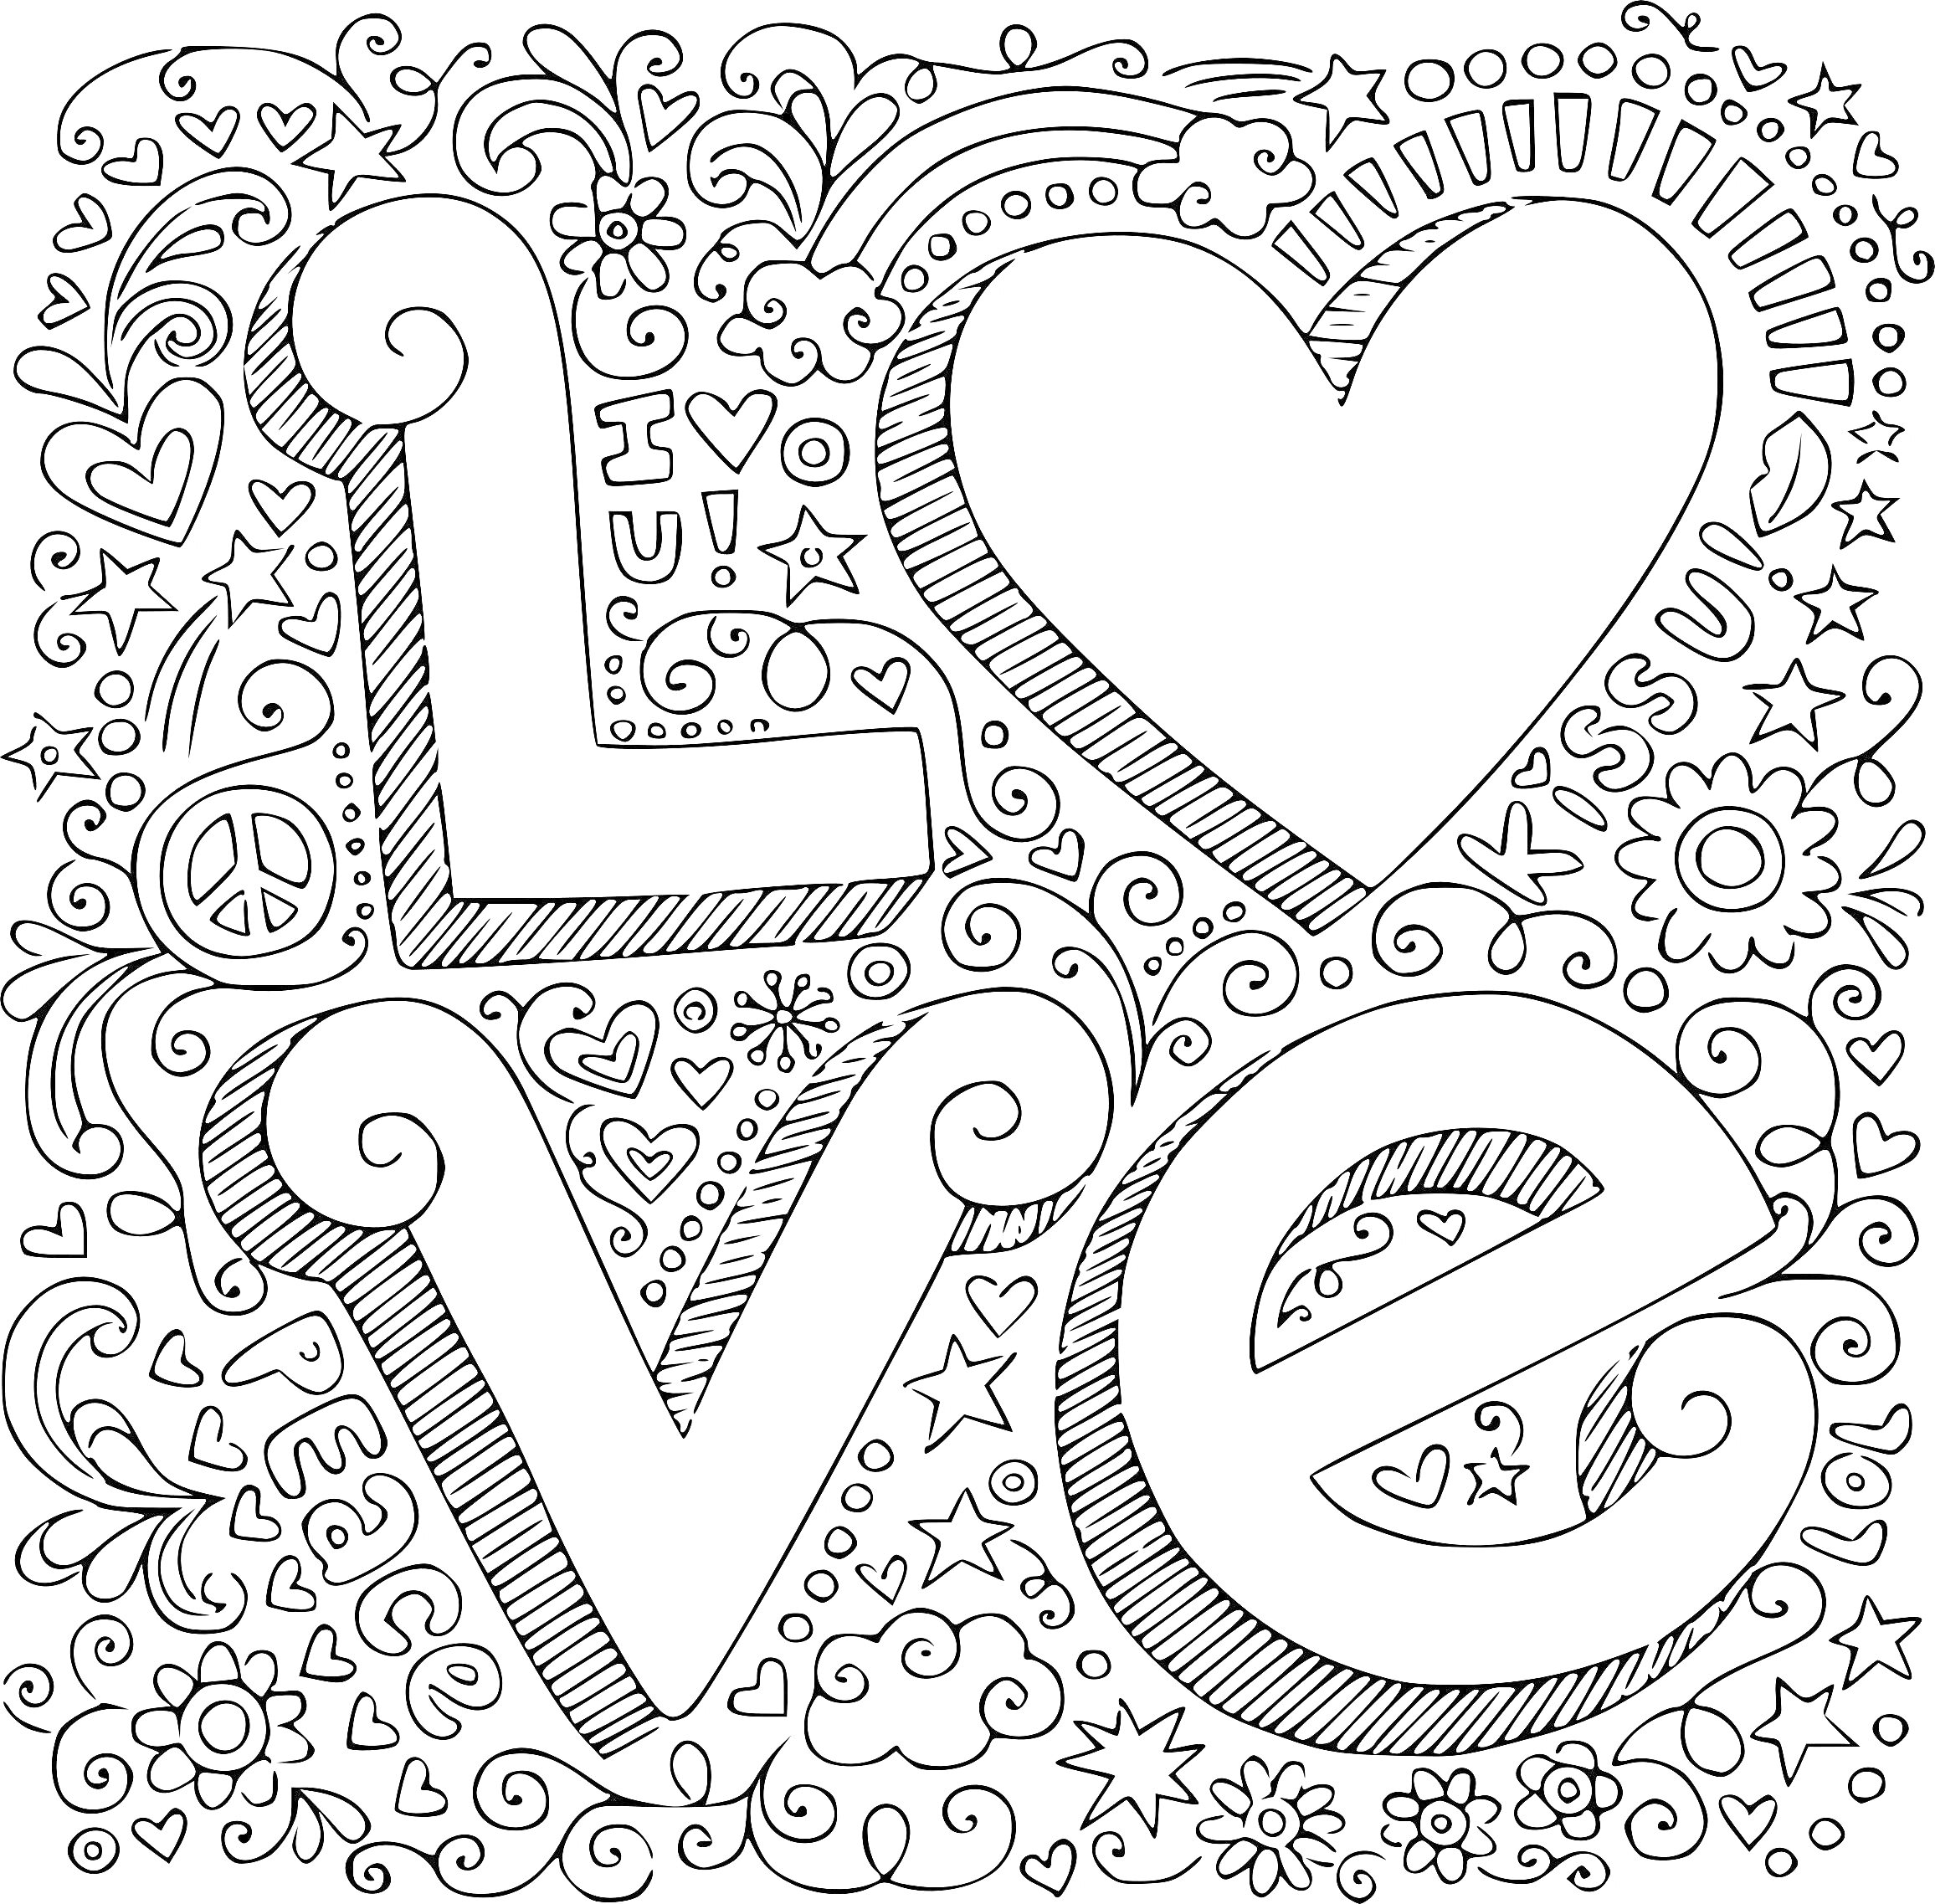 Раскраска LOVE с сердцем и узорами (буквы LOVE, сердце, цветы, звезды, облака, радуга, мирный знак, сердечки)